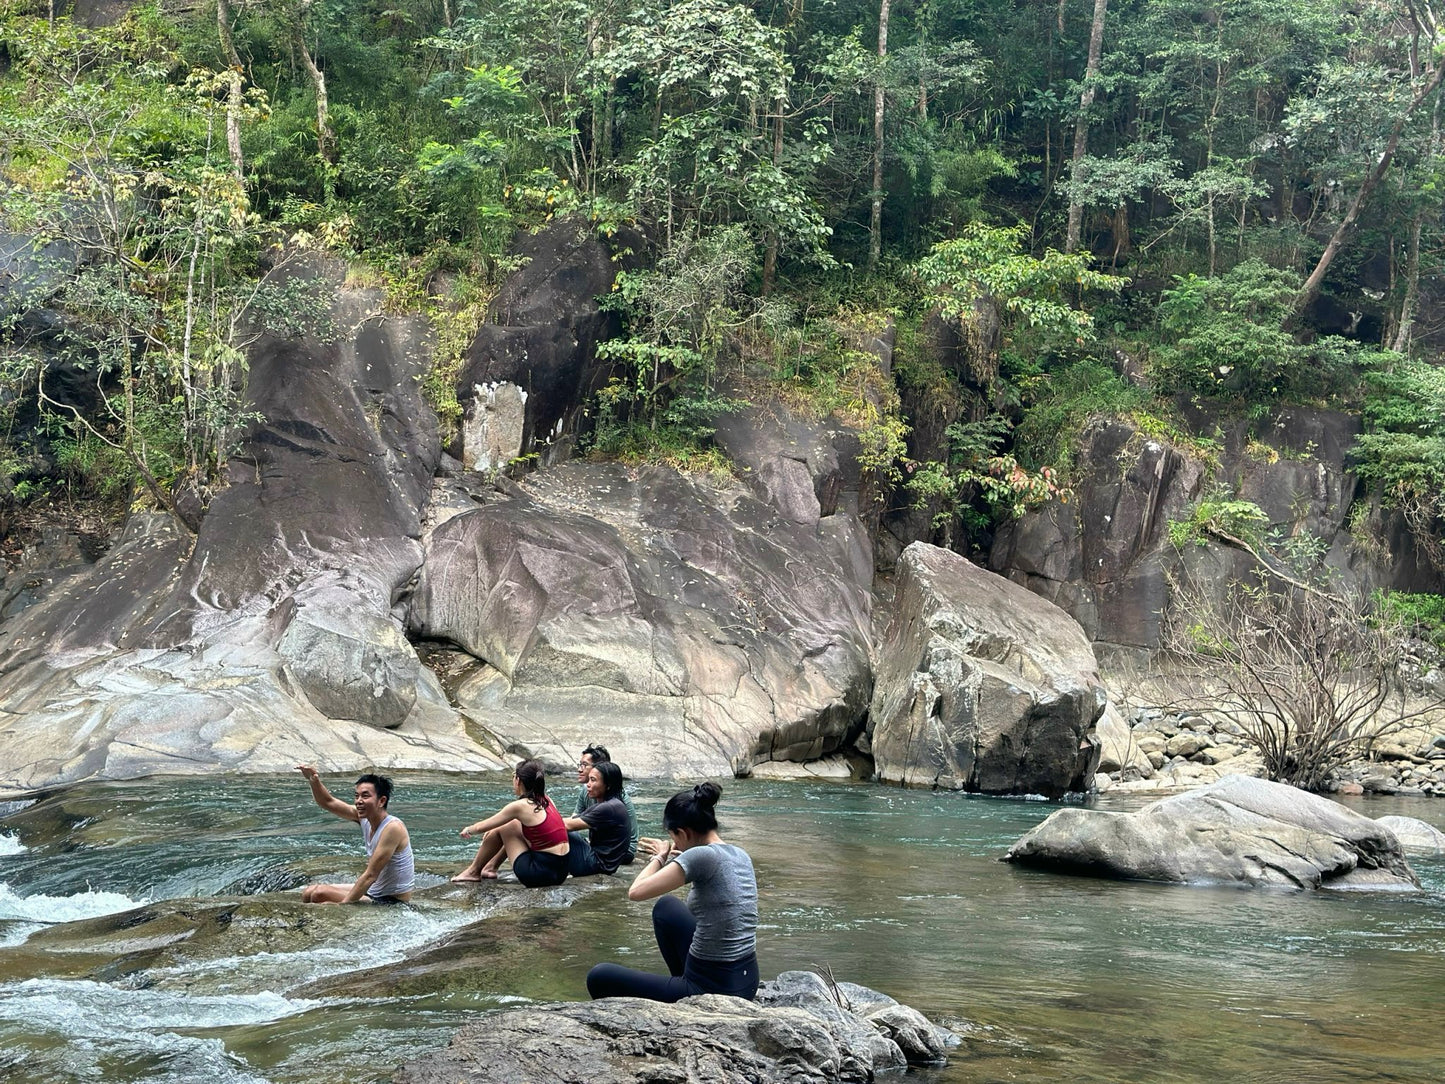 74A: Cuộc phiêu lưu Madagui: Khám phá khu rừng bí ẩn